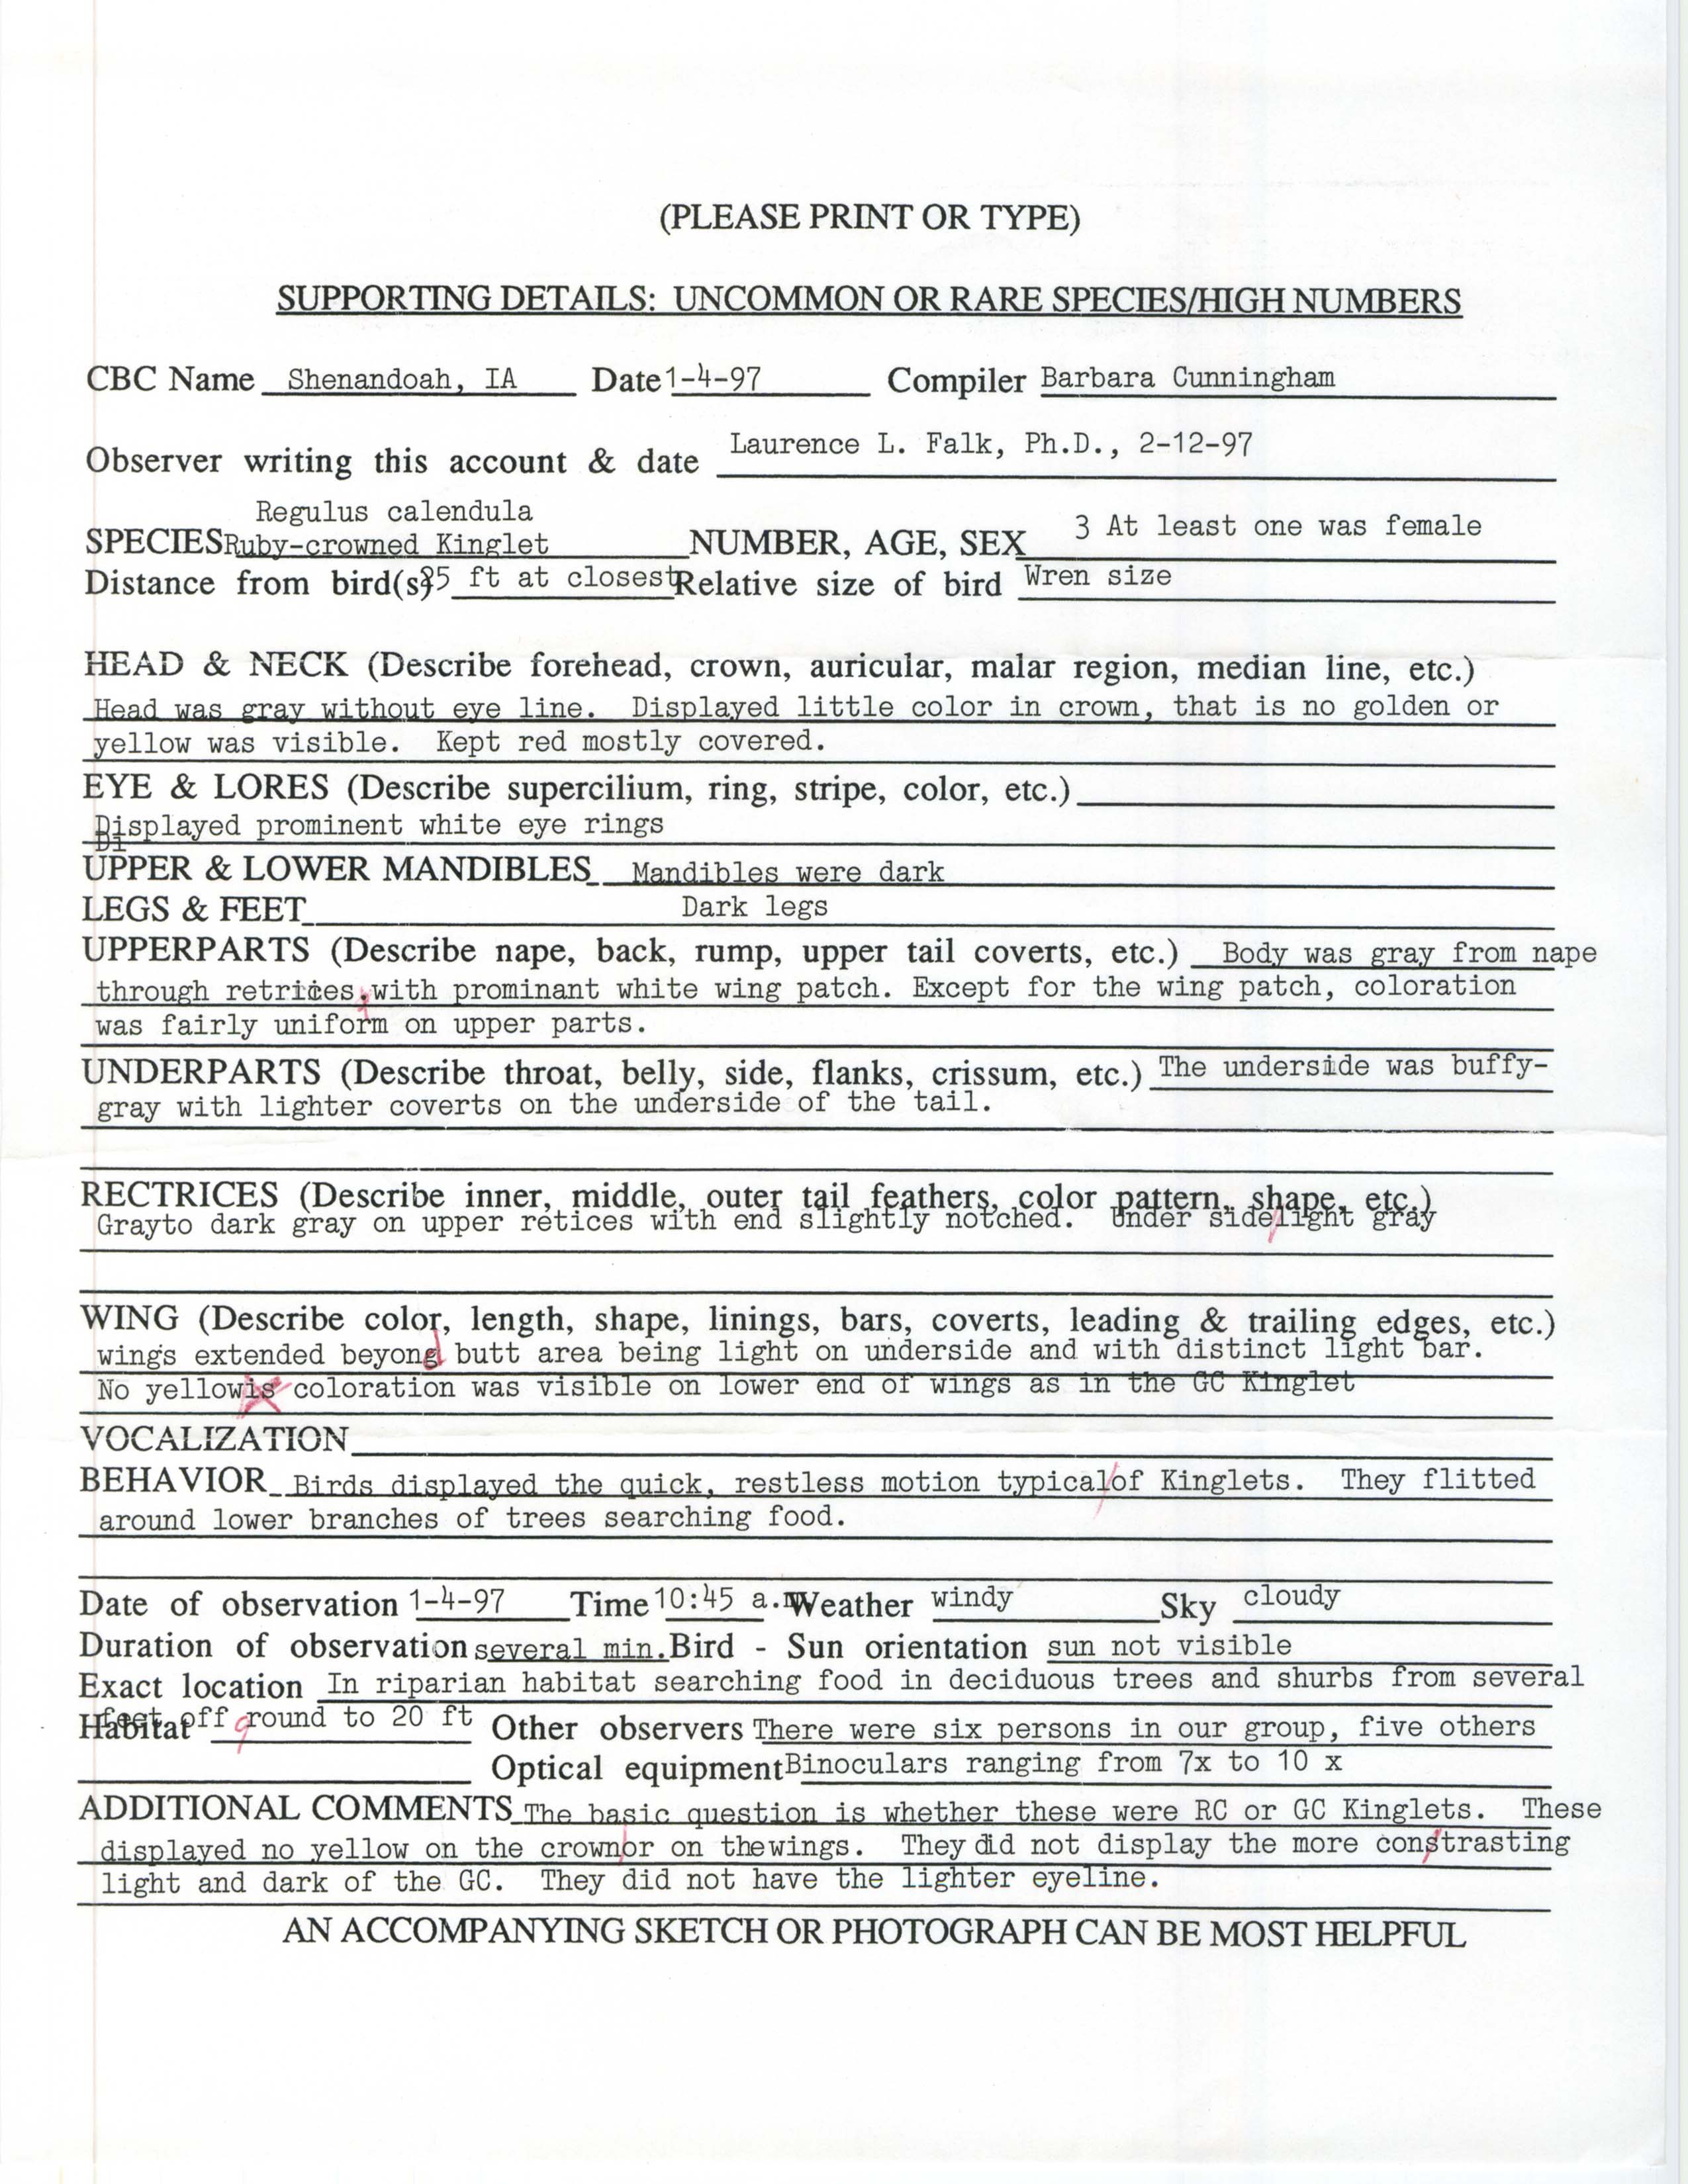 Rare bird documentation form for Ruby-crowned Kinglet at Shenandoah, 1997